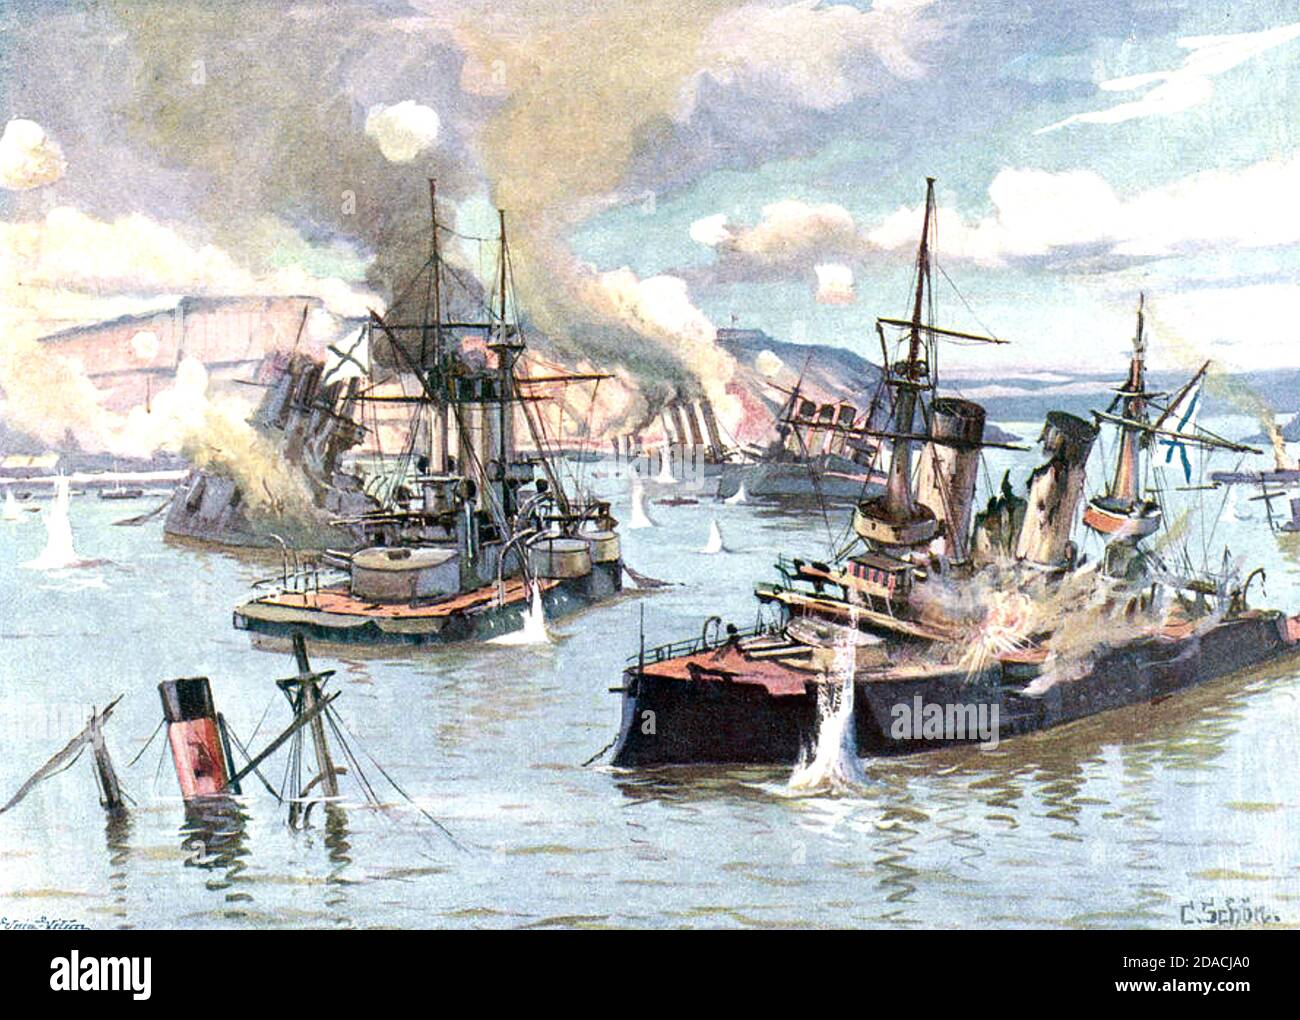 RUSSISCHE PACIFC FLOTTE in Port Arthur wird von japanischen Landstreitkräften im Dezember 1904 während des Russisch-Japanischen Krieges von 1904-1905 beschossen. Stockfoto